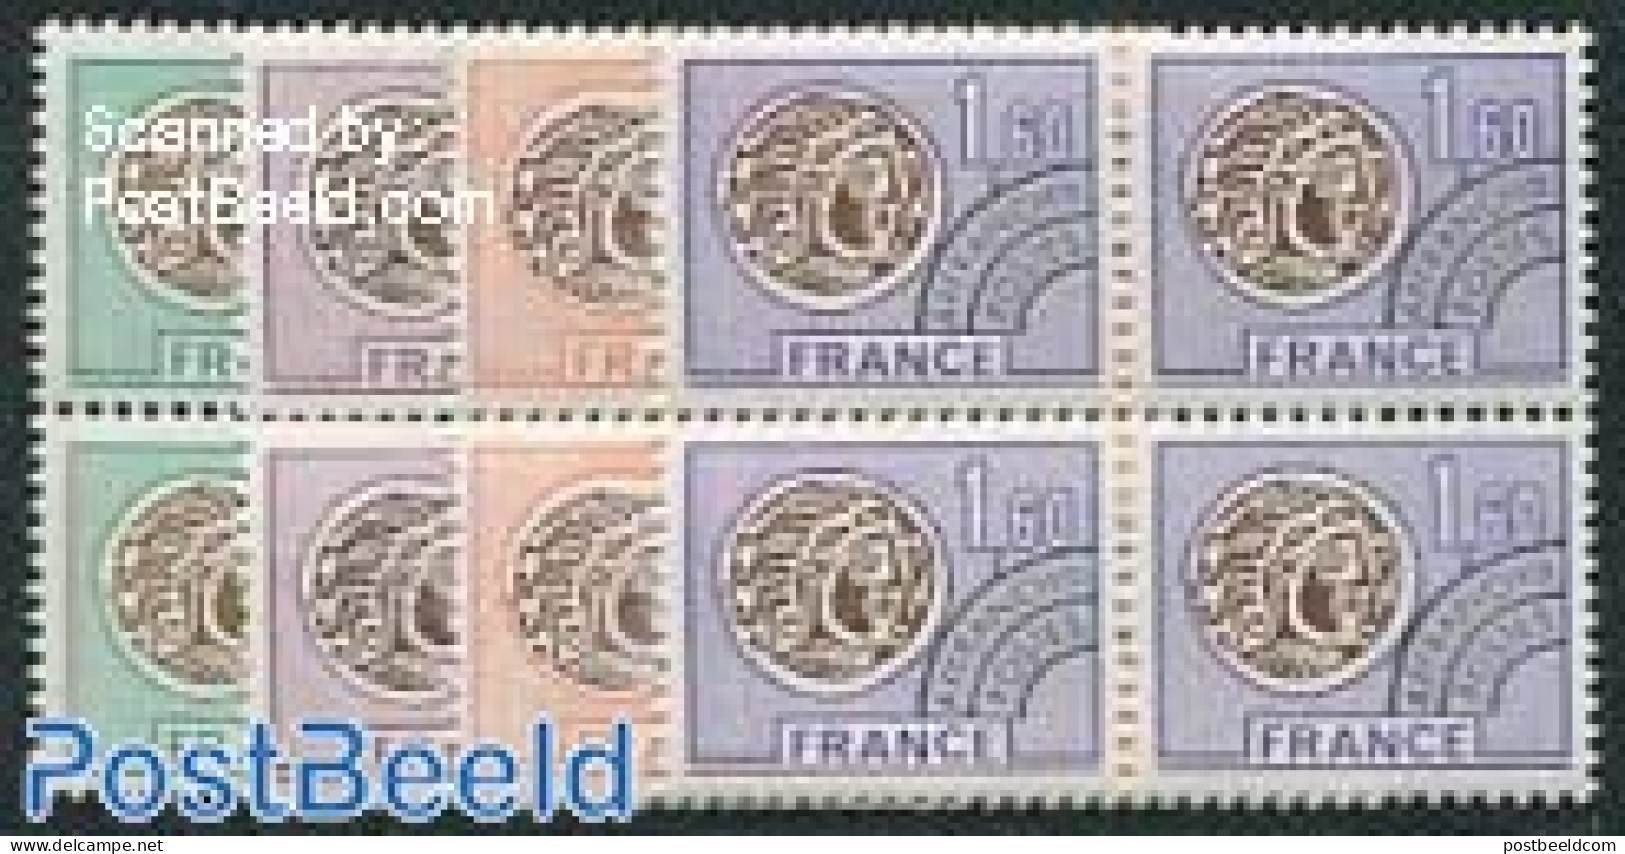 France 1976 Precancels 4v, Blocks Of 4 [+], Mint NH - Unused Stamps